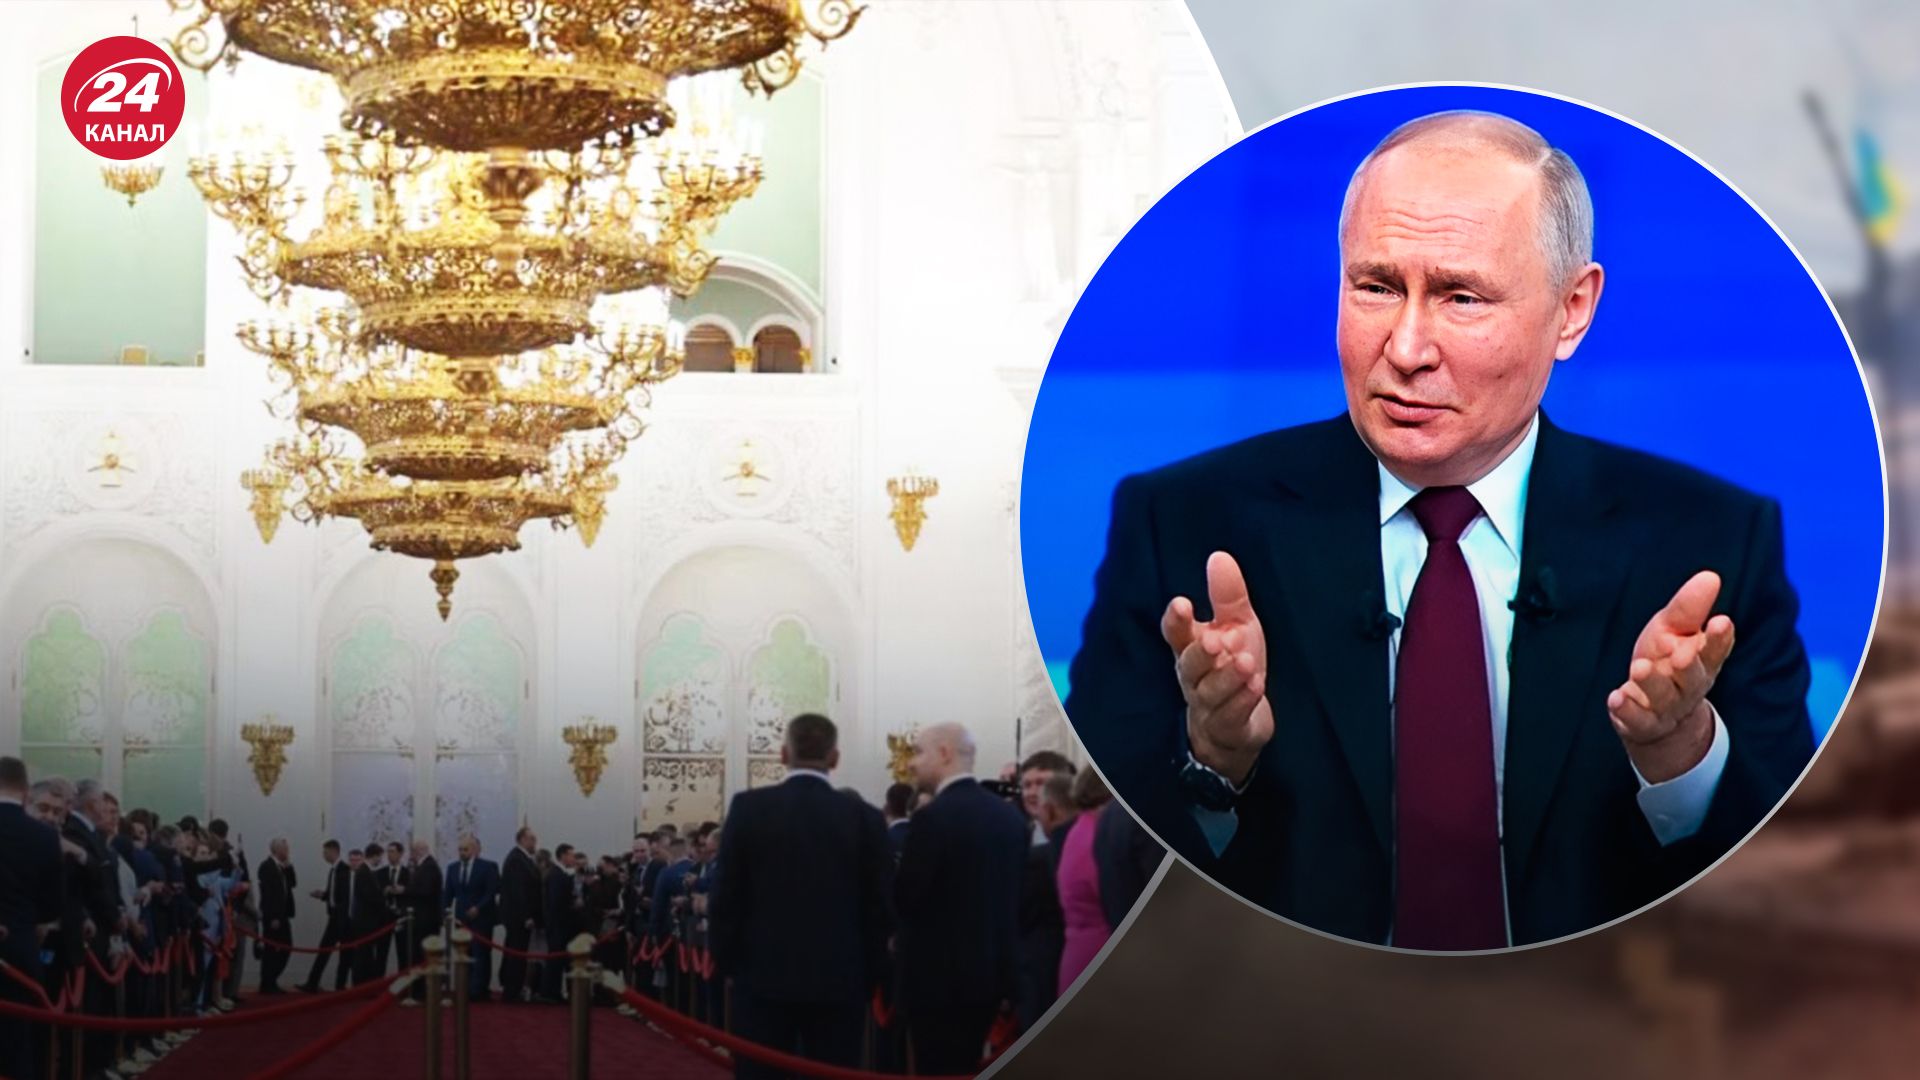 Шаблонная риторика и нечеткие призывы: ISW проанализировал инаугурацию Путина - 24 Канал